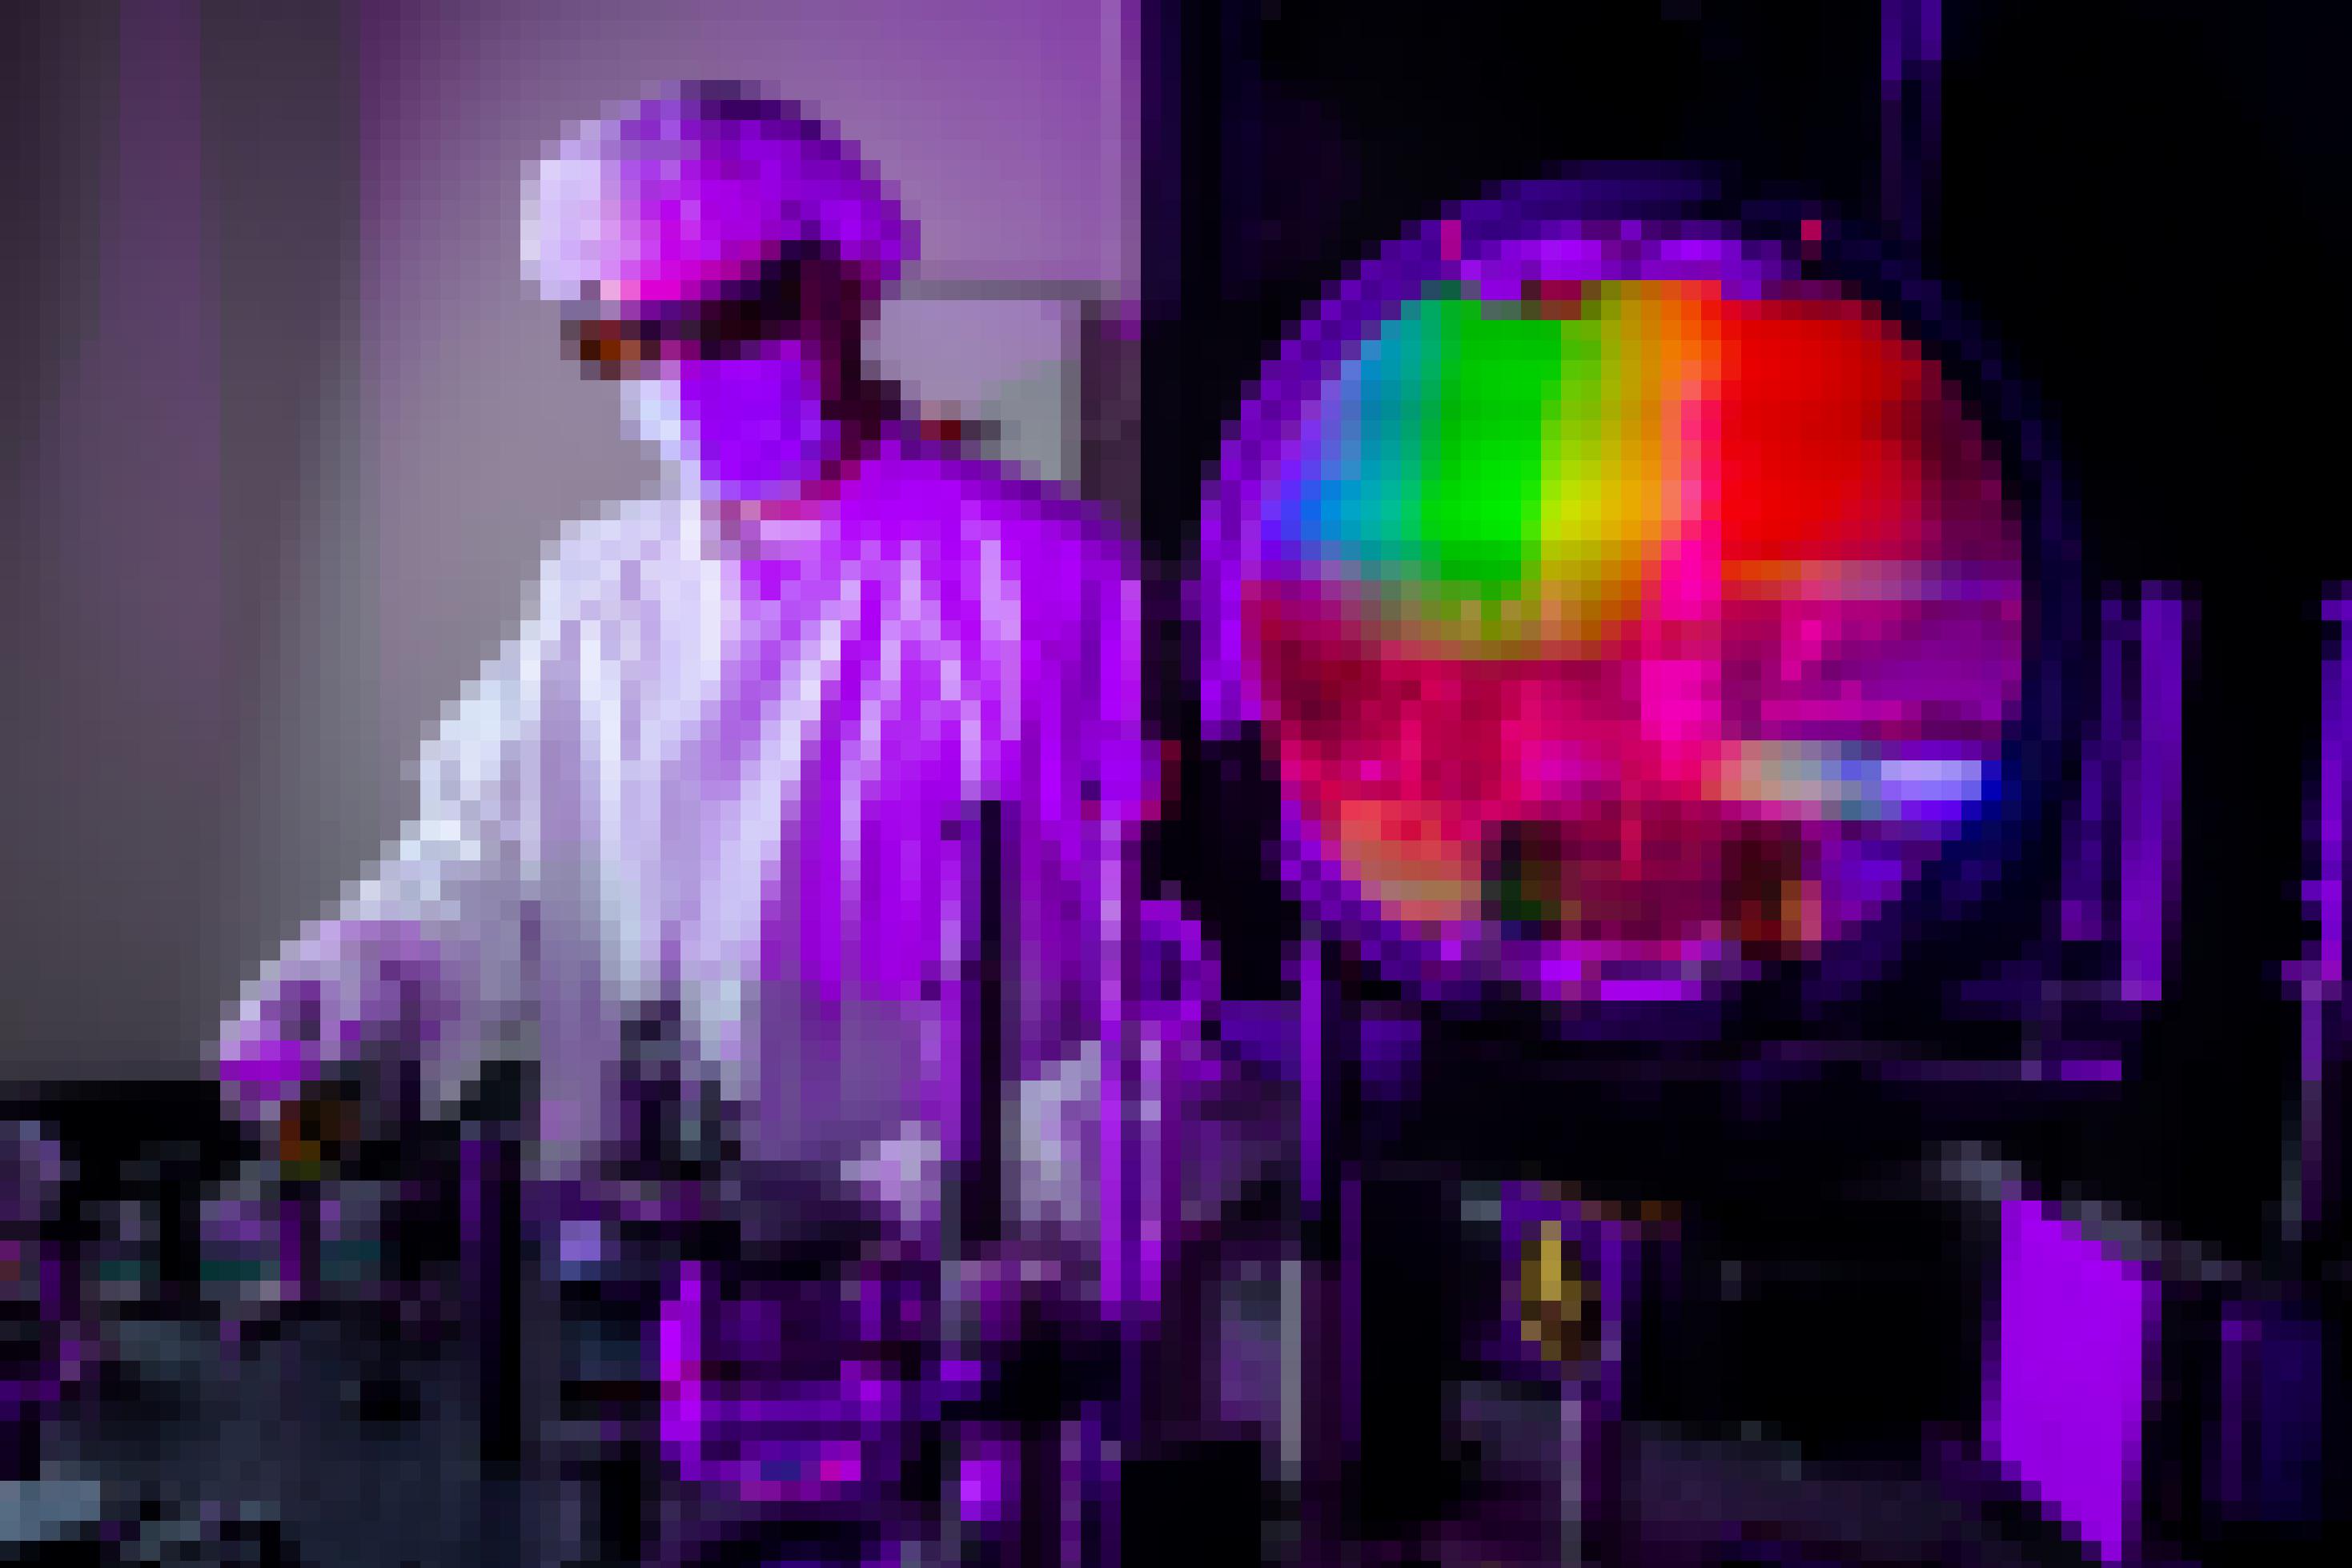 Ein Forscher in Ganzkörperschutzanzug steht vor einer Kammer, in der die Farben des Regenbogens zu sehen sind.